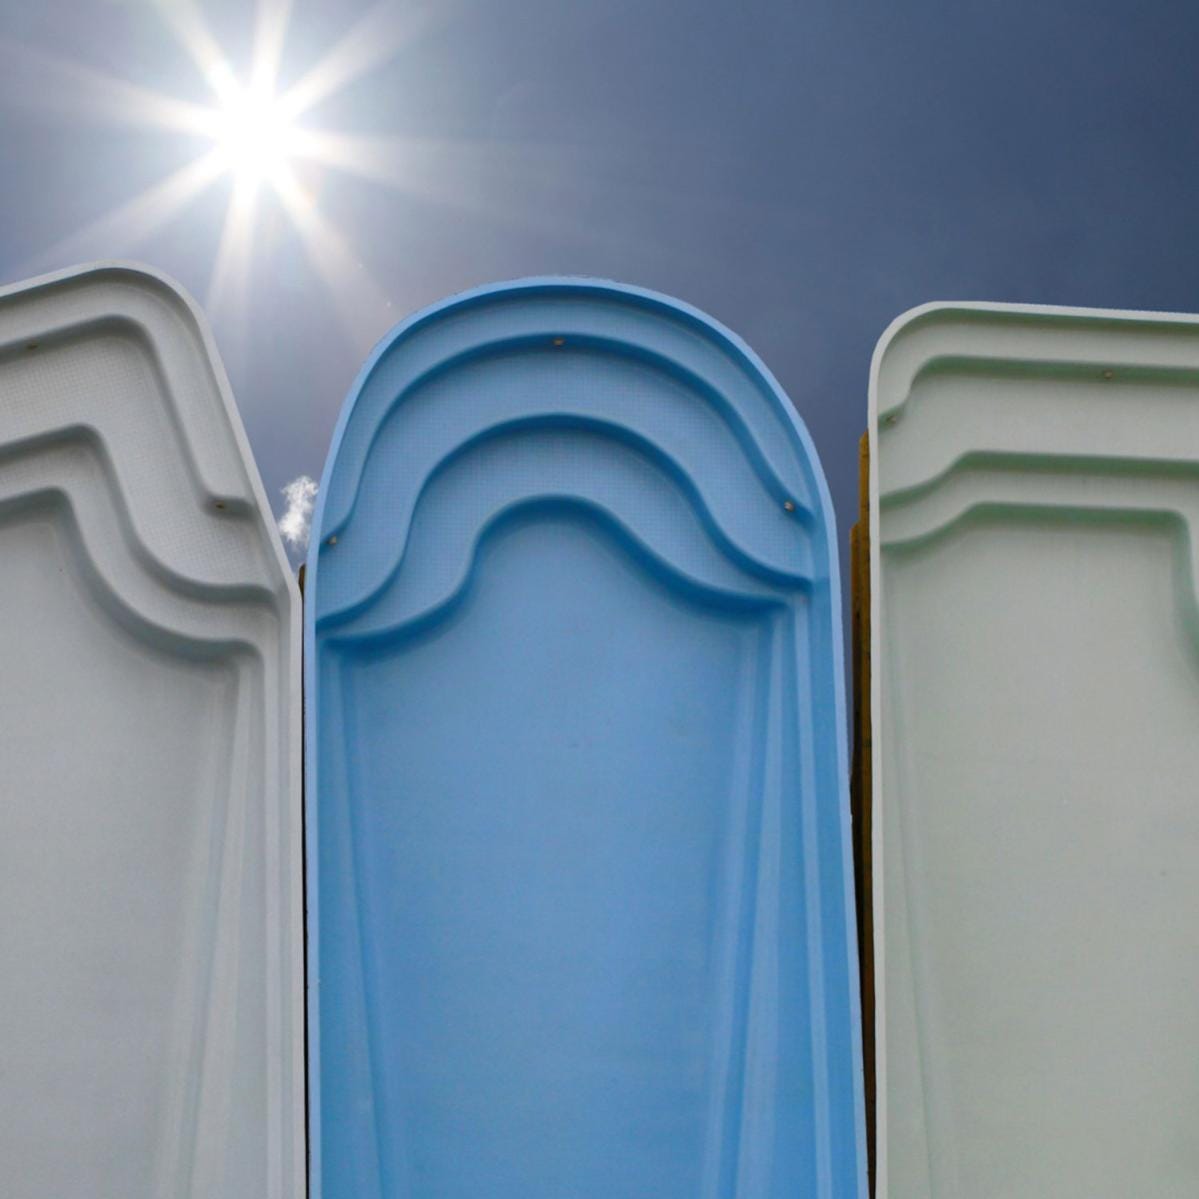 Peinture Piscine pour coque polyester - 5 kg (jusqu'à 15m² pour 2 couches) - Bleu Ciel - RAL 5015 - ARCANE INDUSTRIES 7